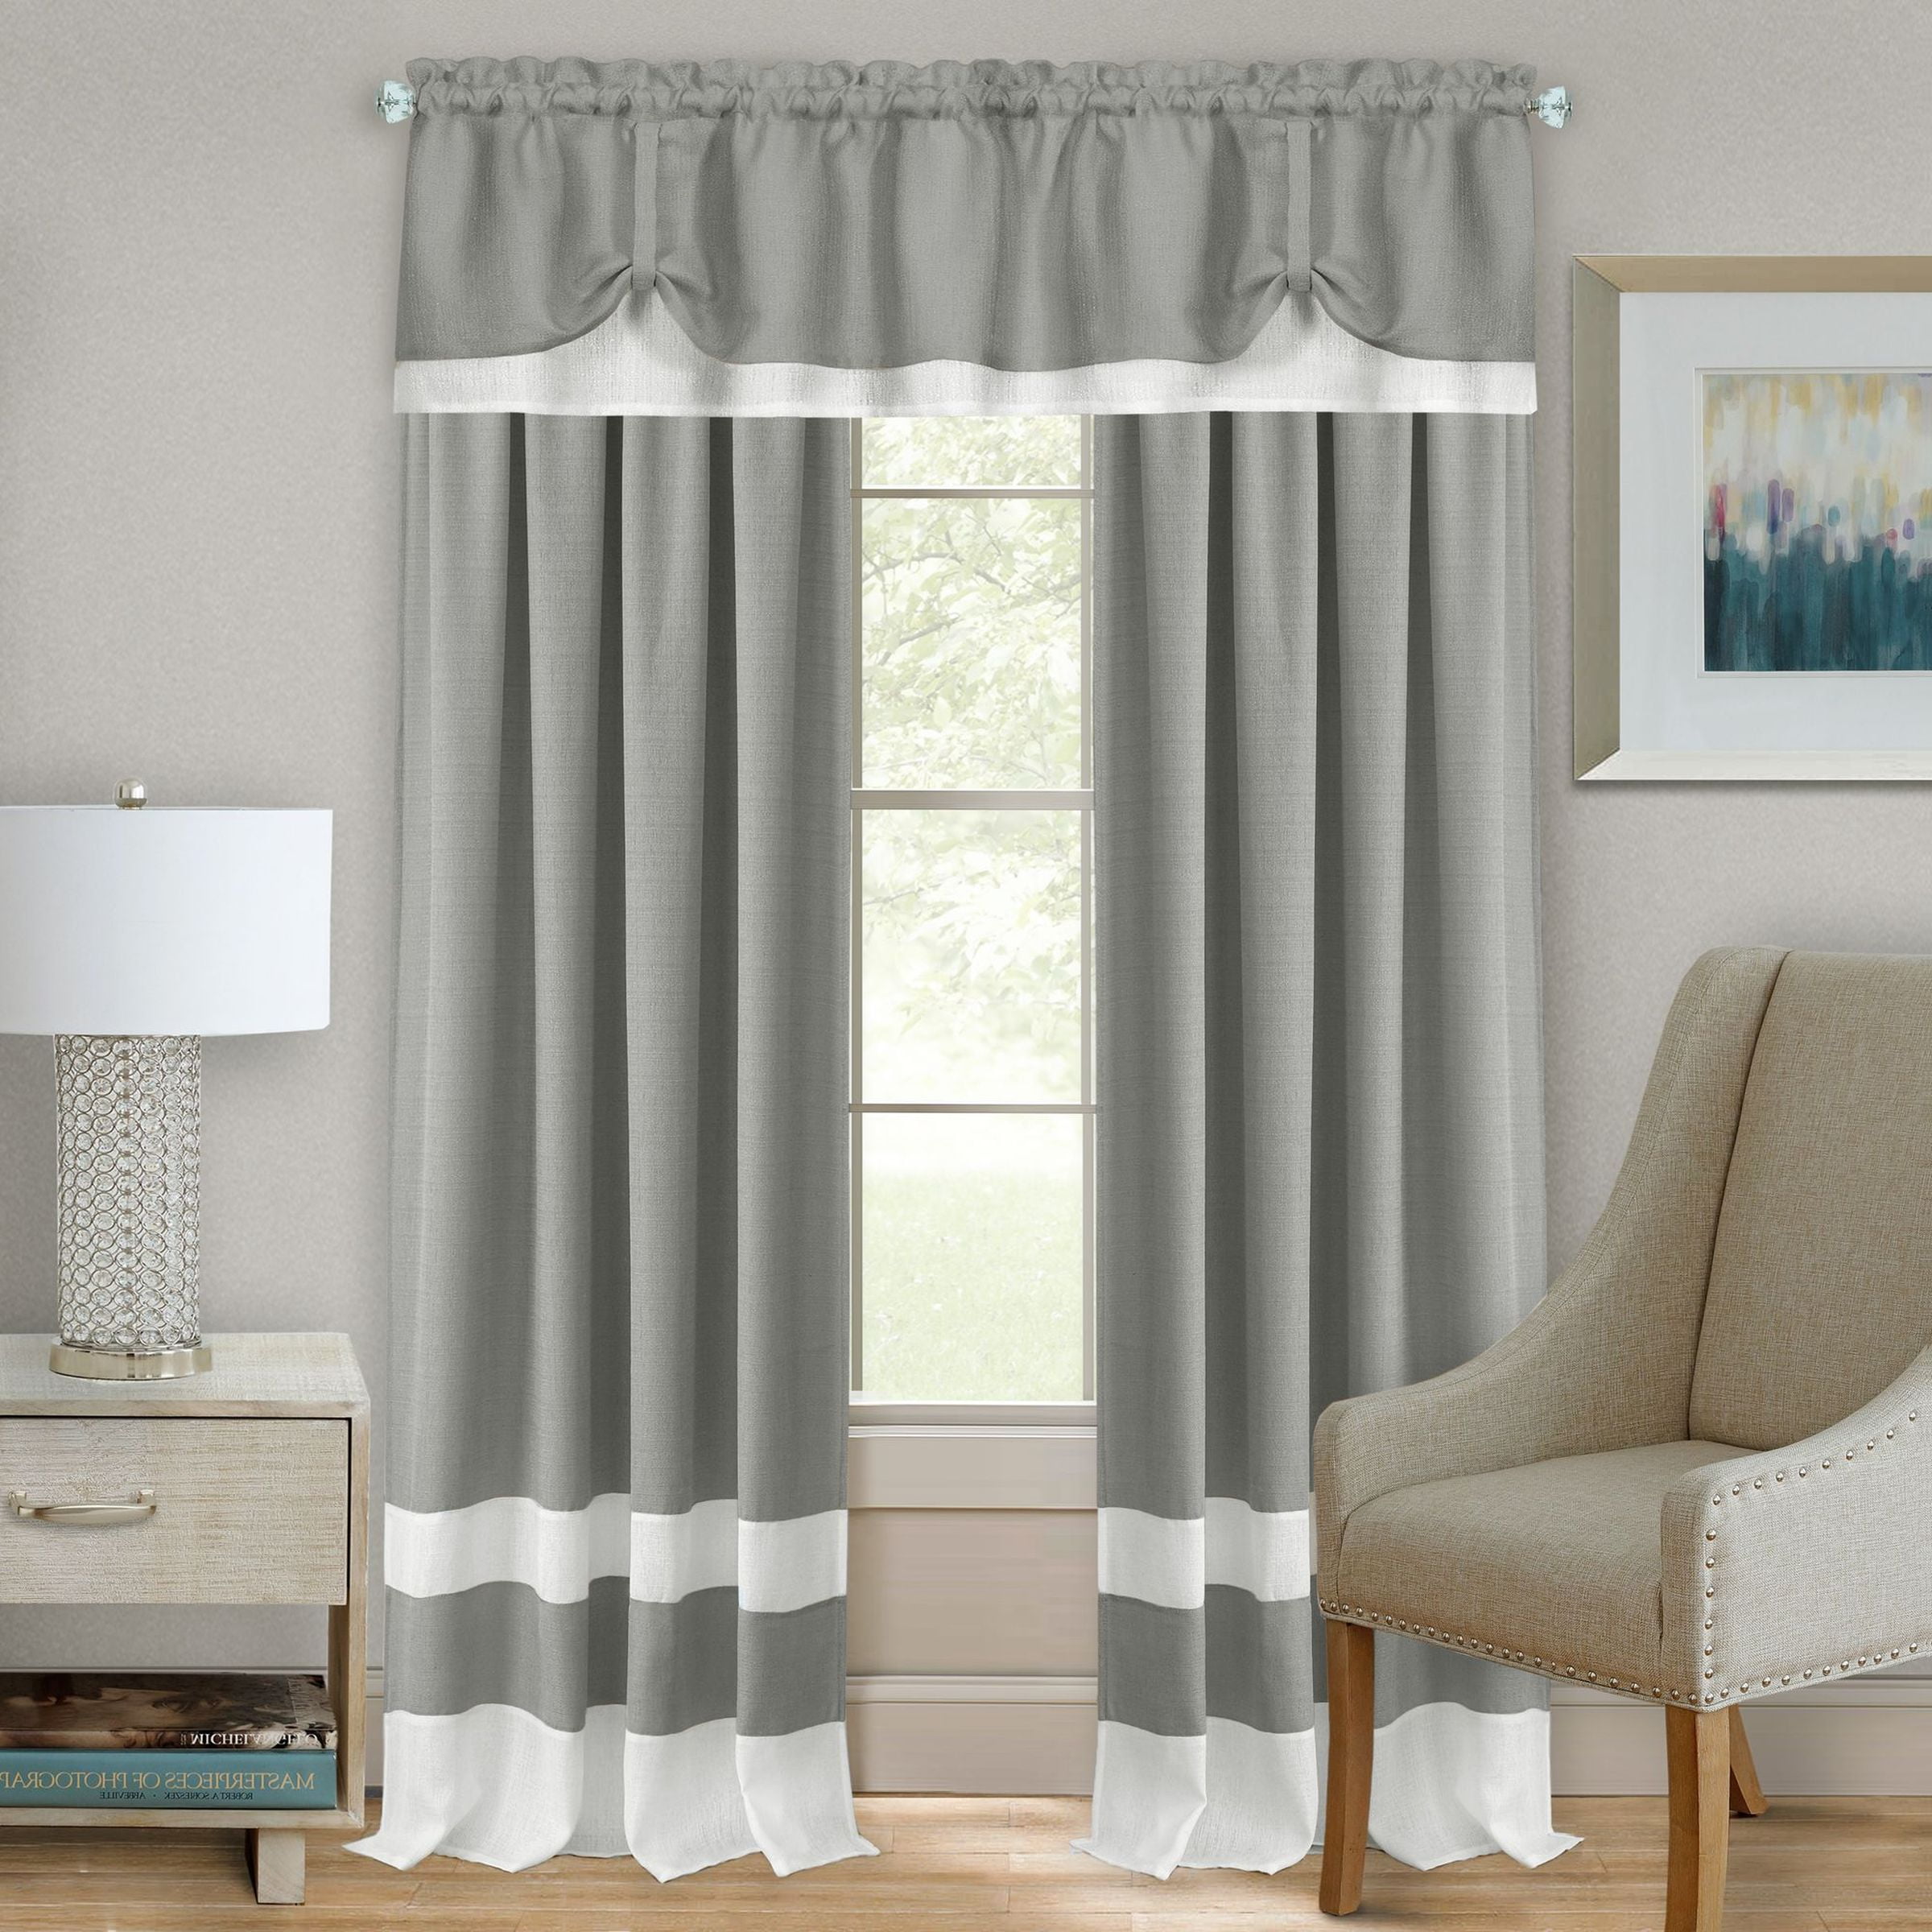 LIVE LIFE Mackenzie Rod Pocket Window Curtain Panel - 52x63 - Grey/White